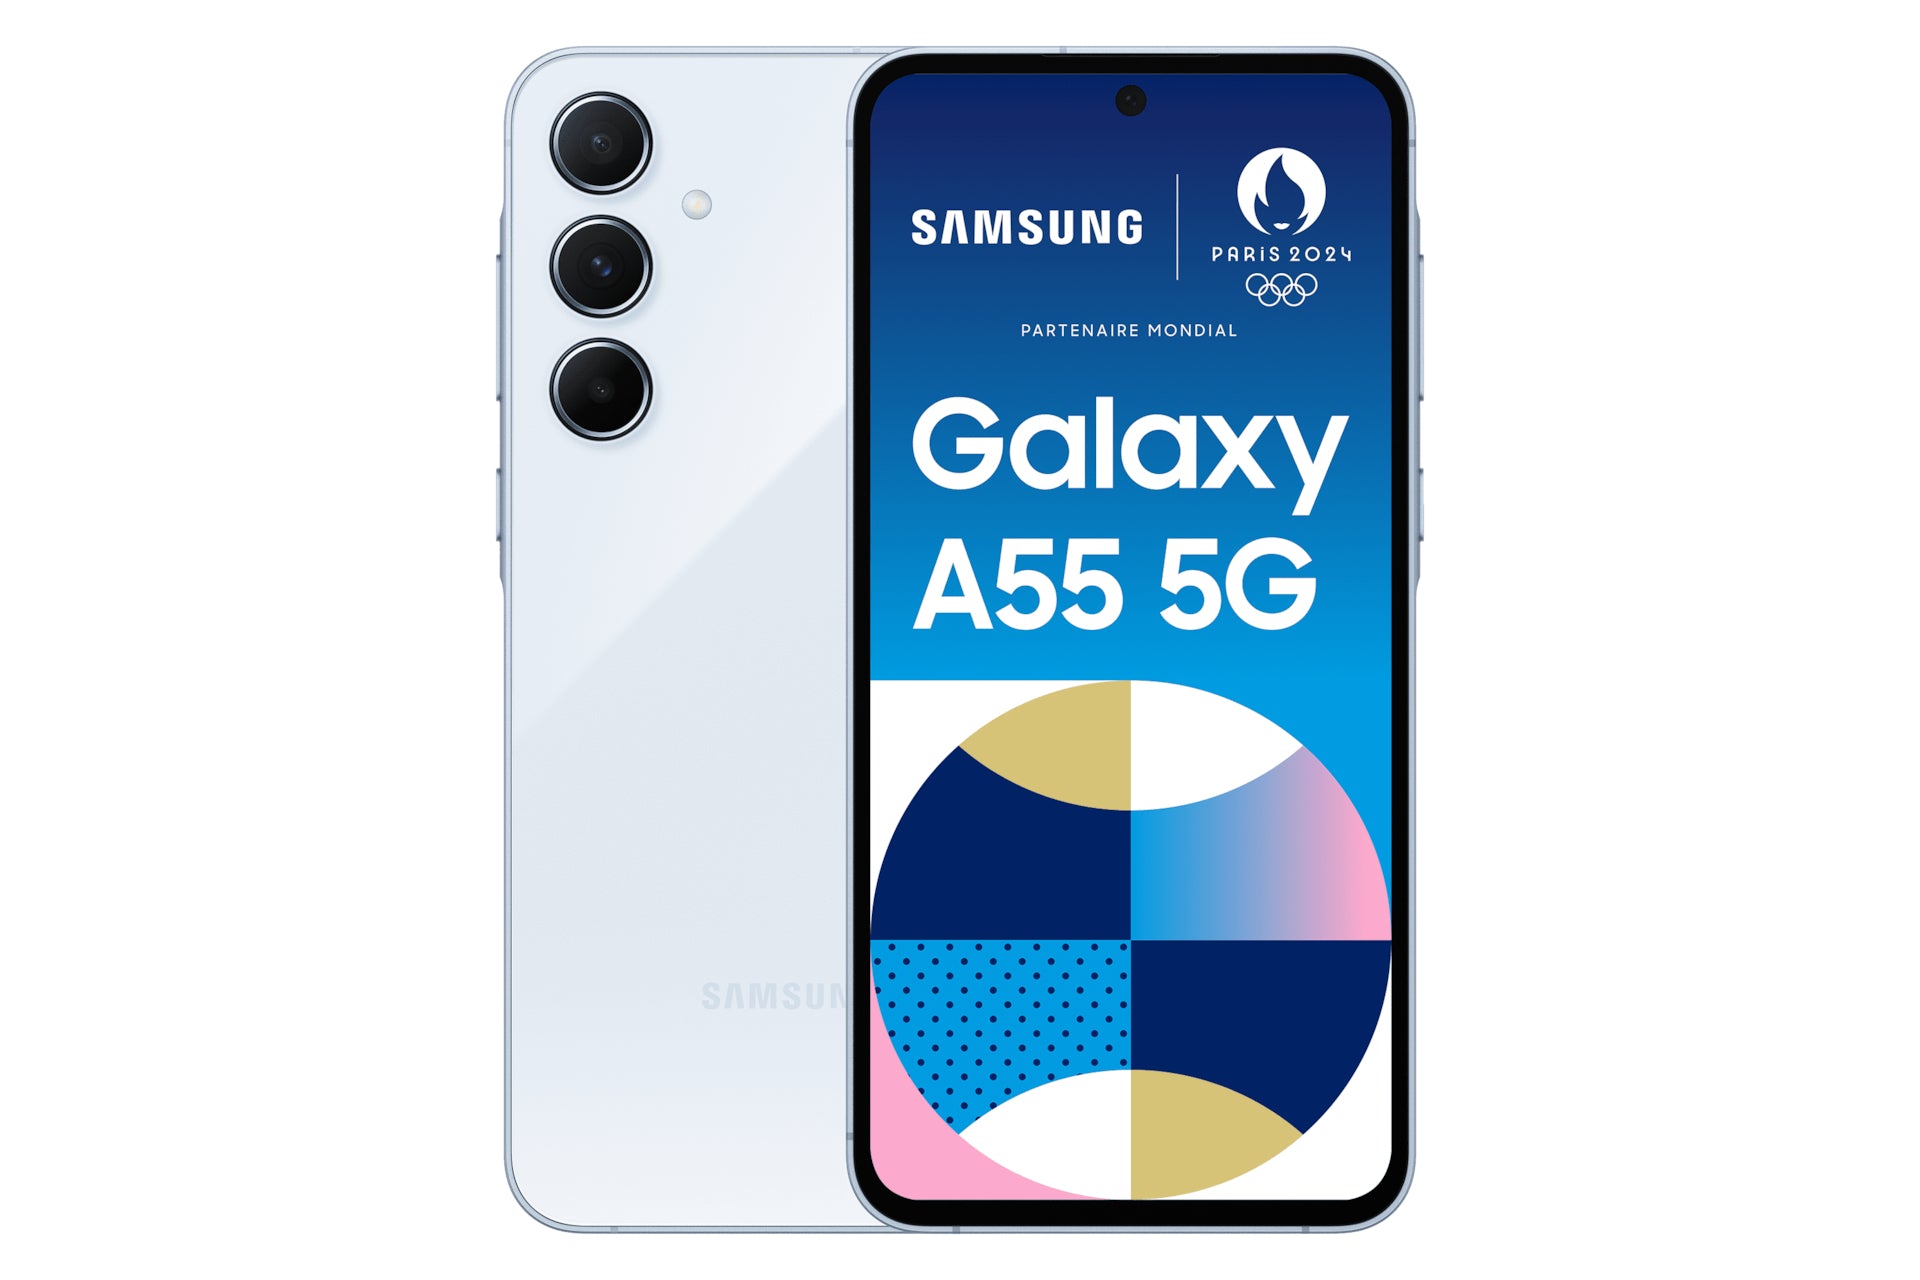 SAMSUNG GALAXY A55 5G LIGHT BLUE 128GB